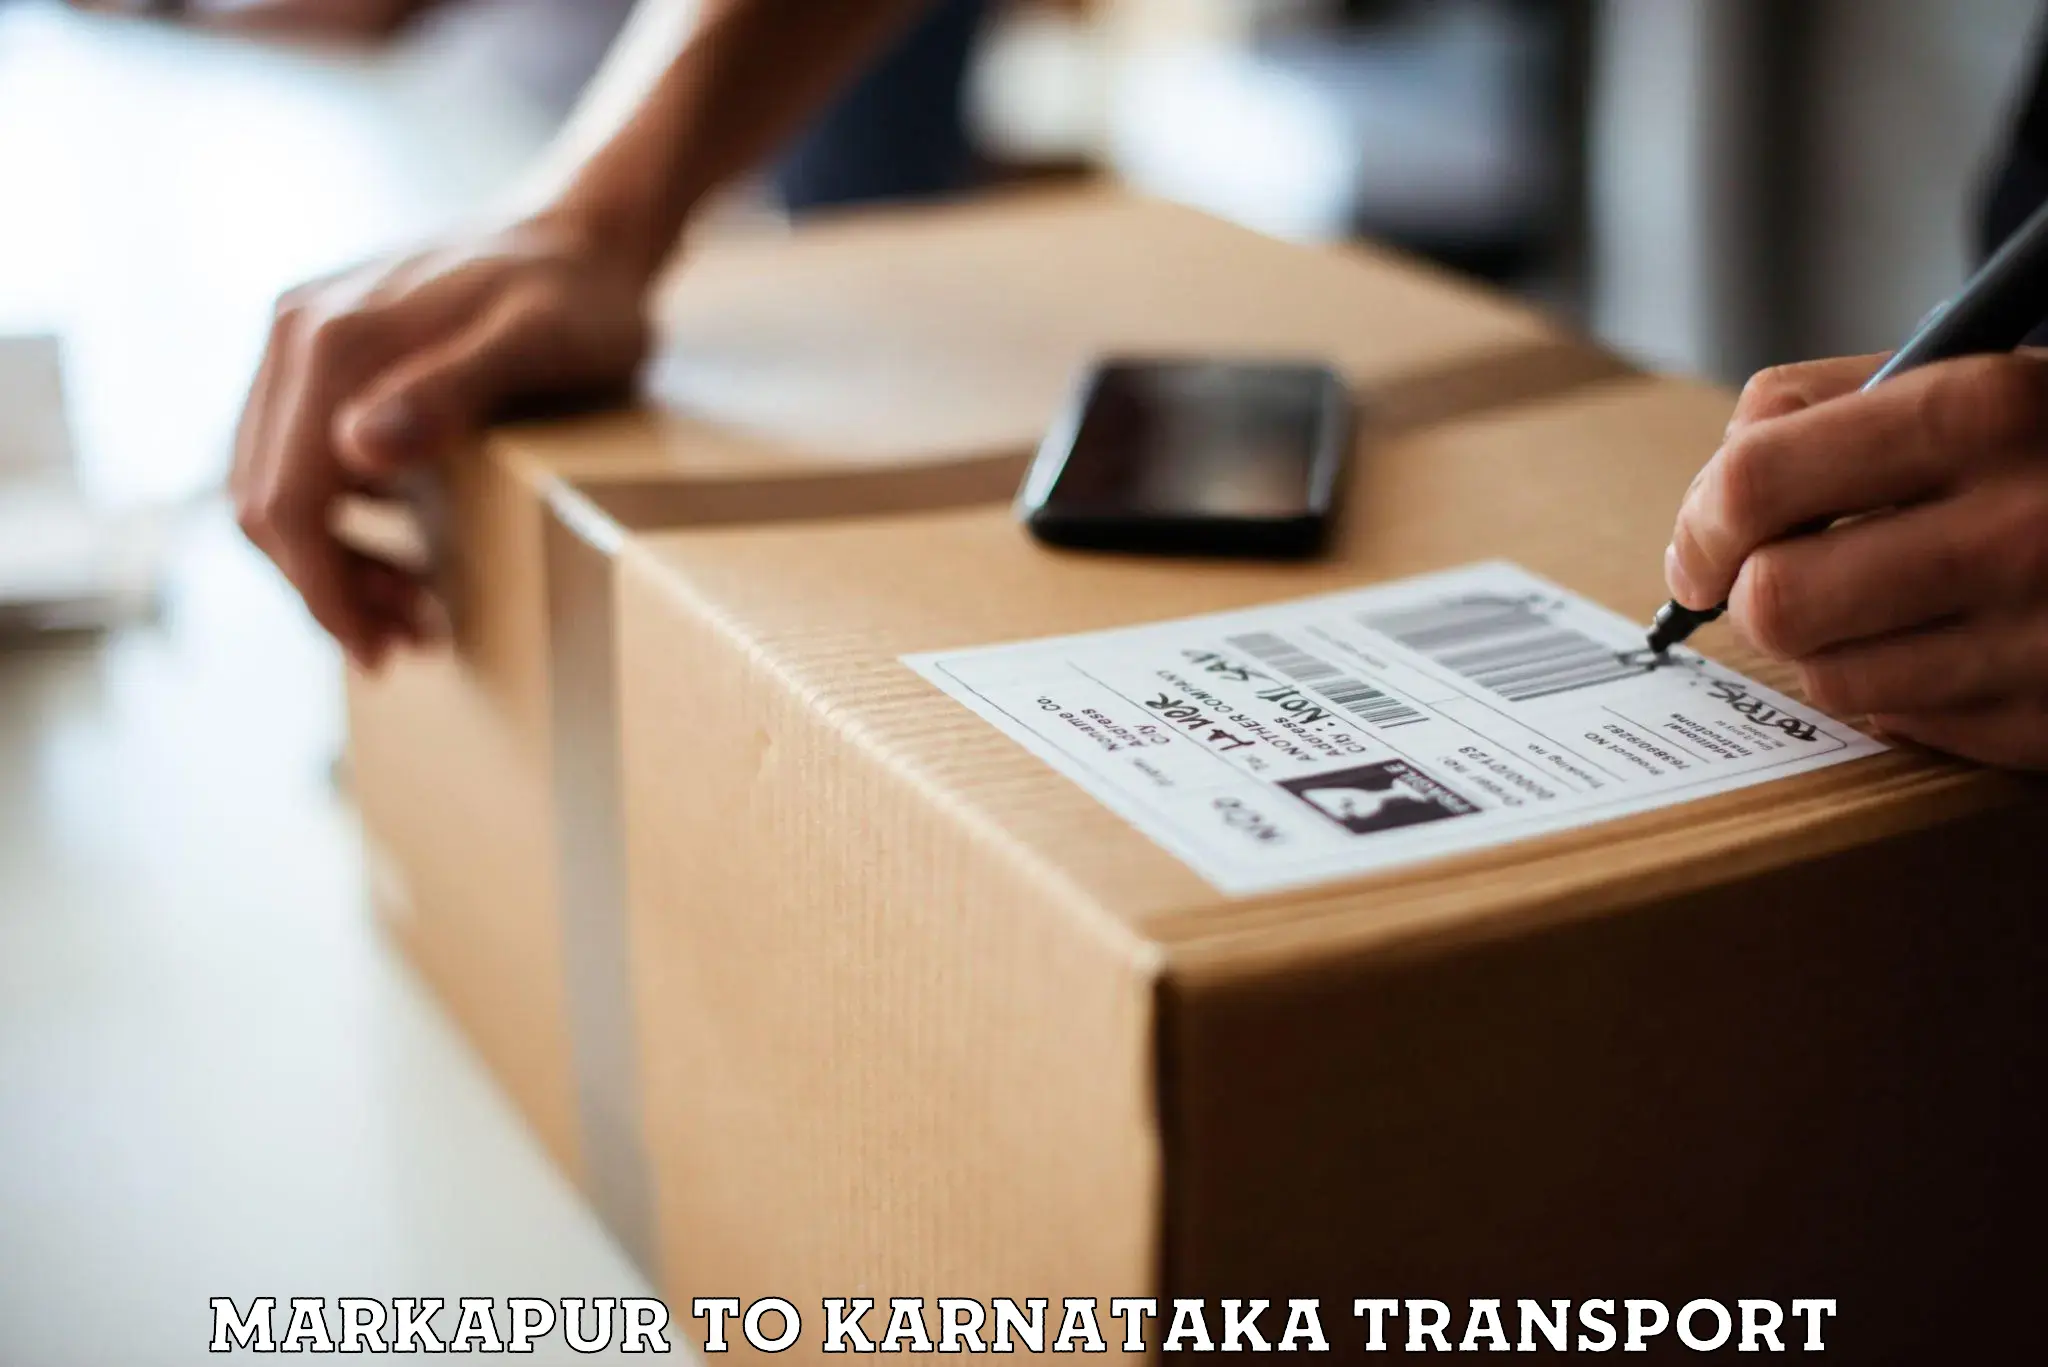 International cargo transportation services Markapur to Karkala